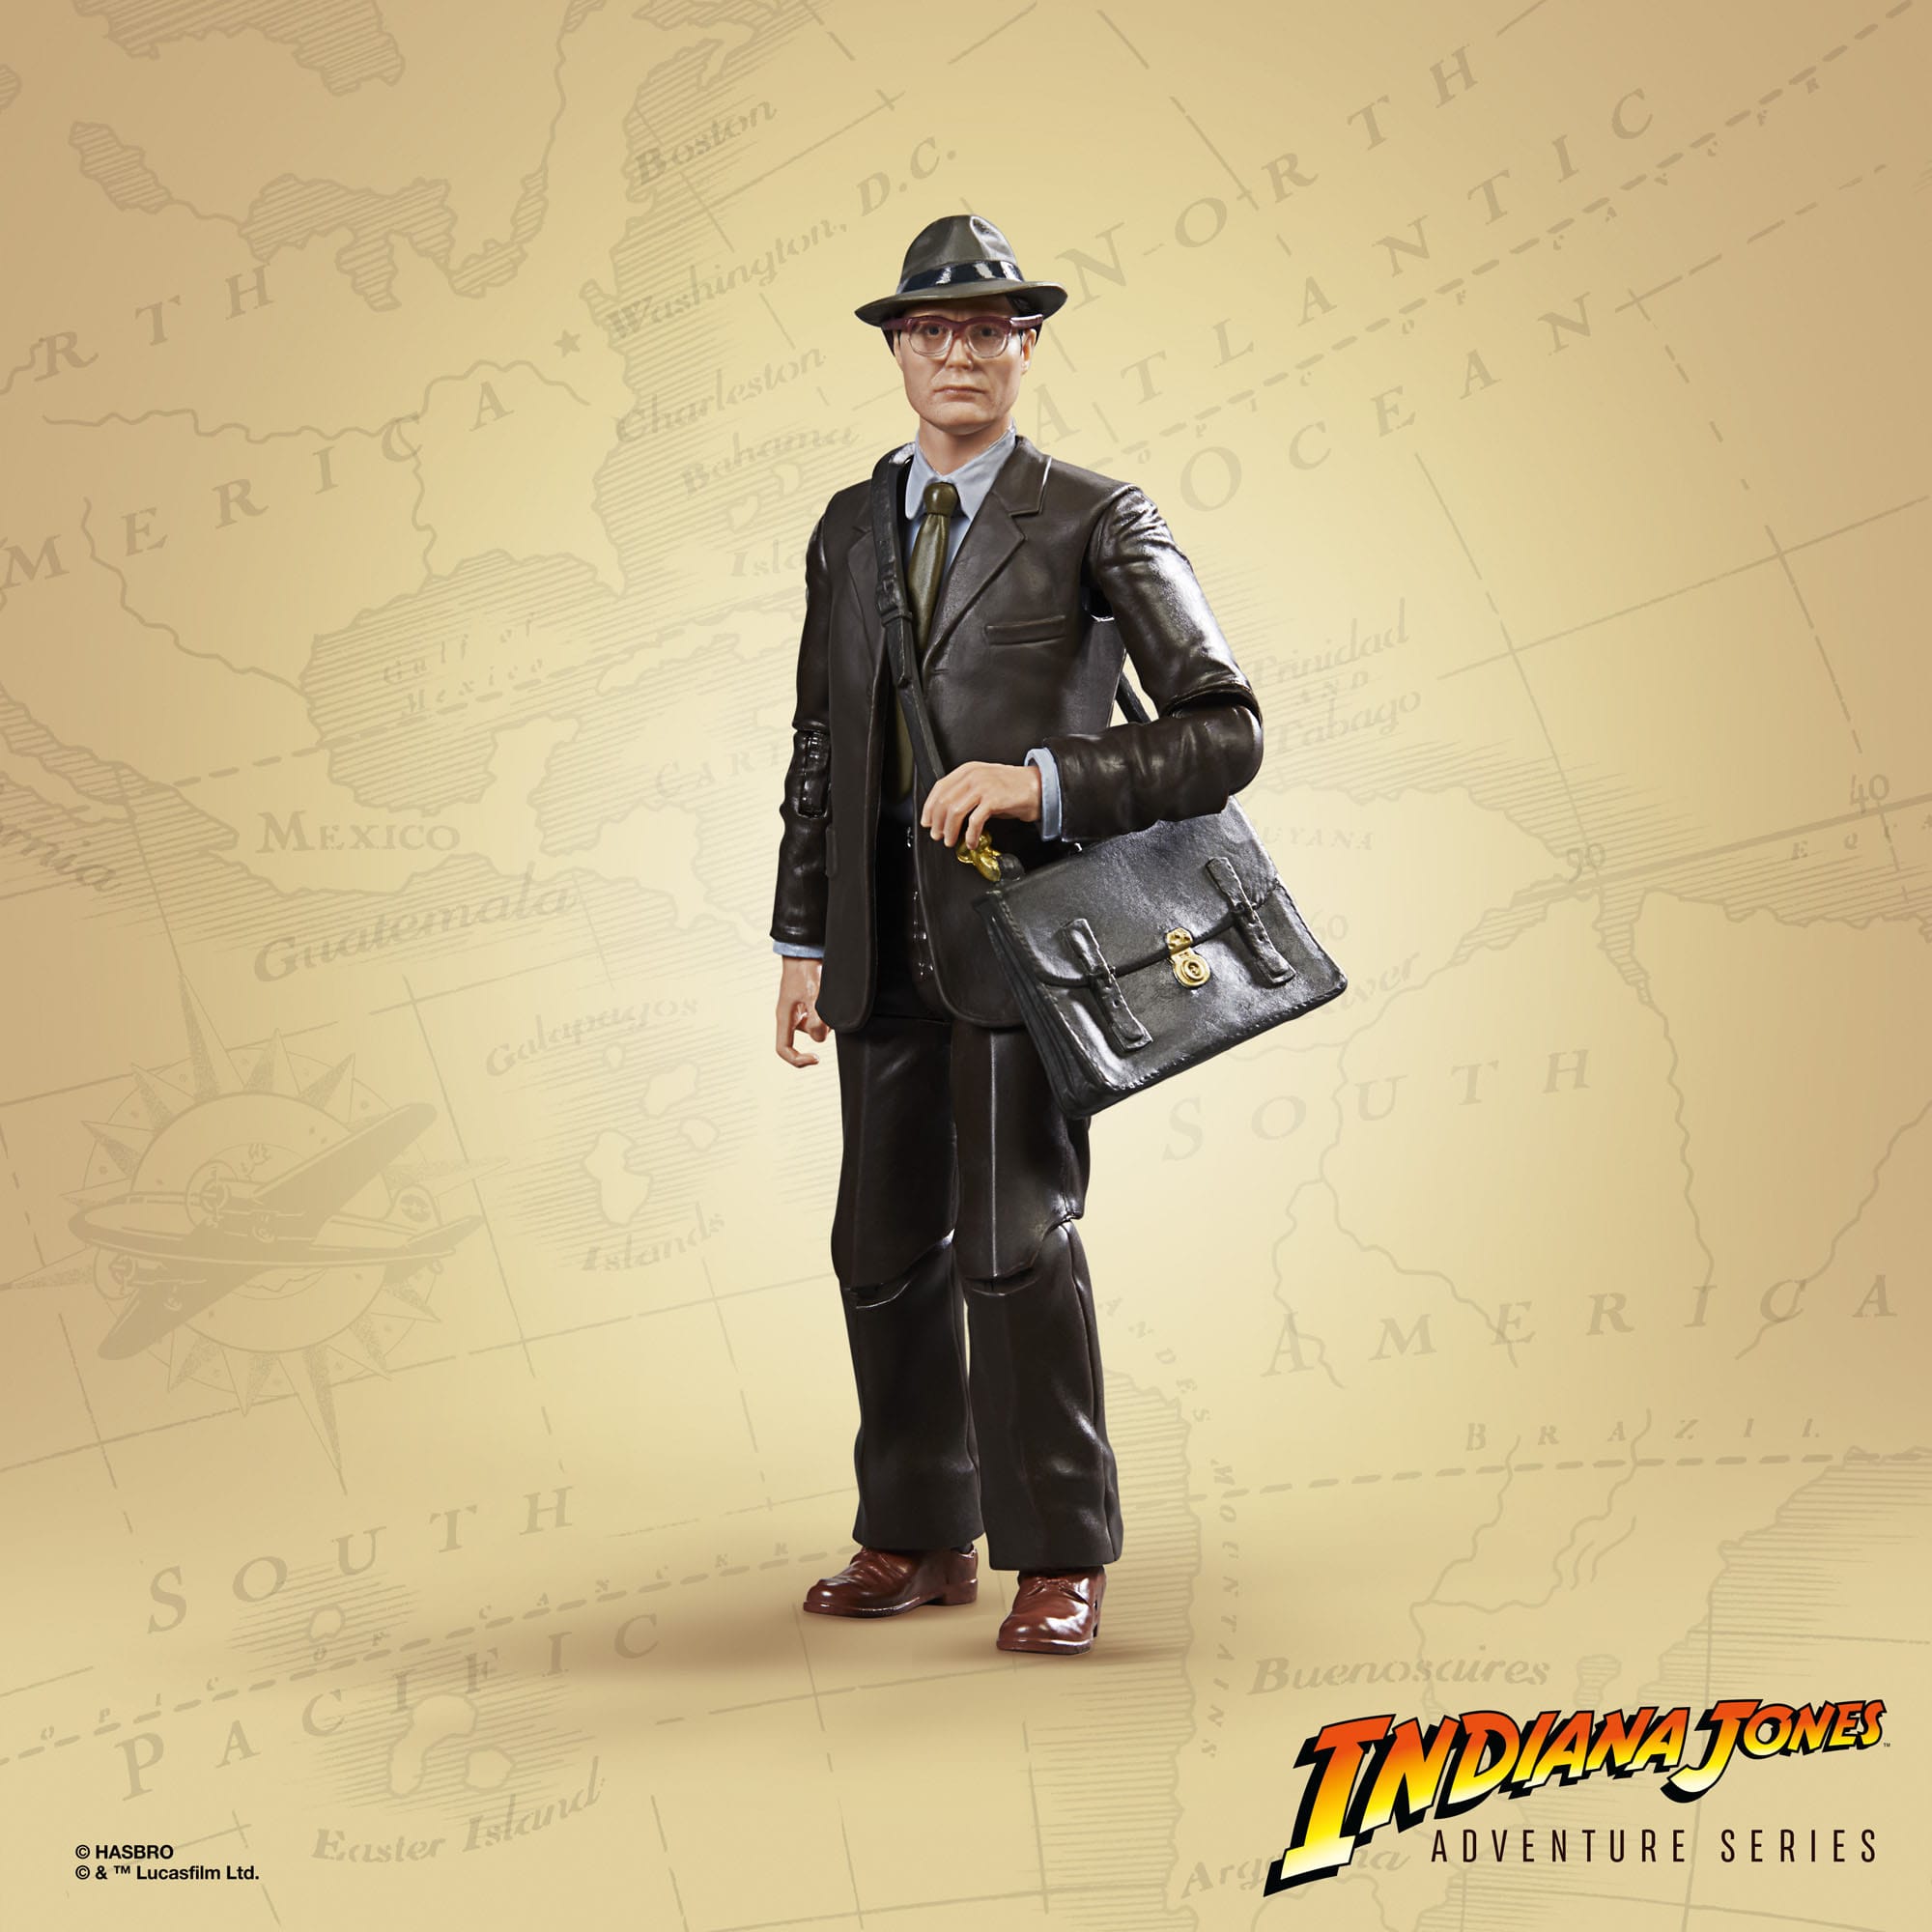  Indiana Jones Adventure Series Actionfigur Dr. Jürgen Voller (Das Rad des Schicksals) 15 cm  F60745X0 5010994168001